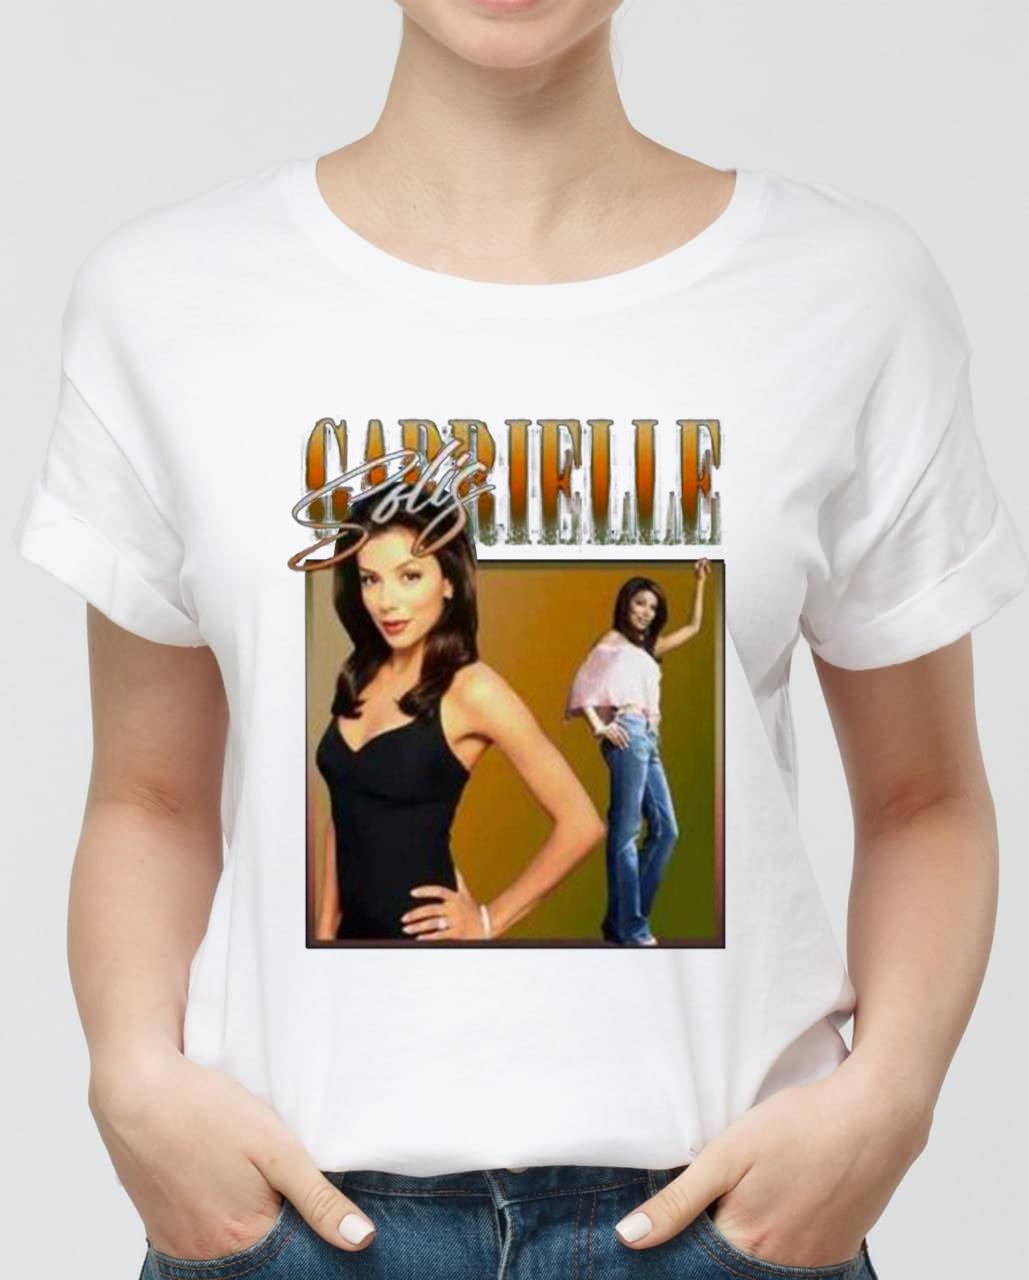 Gabrielle Solis Desperate Housewives Unisex T-Shirt